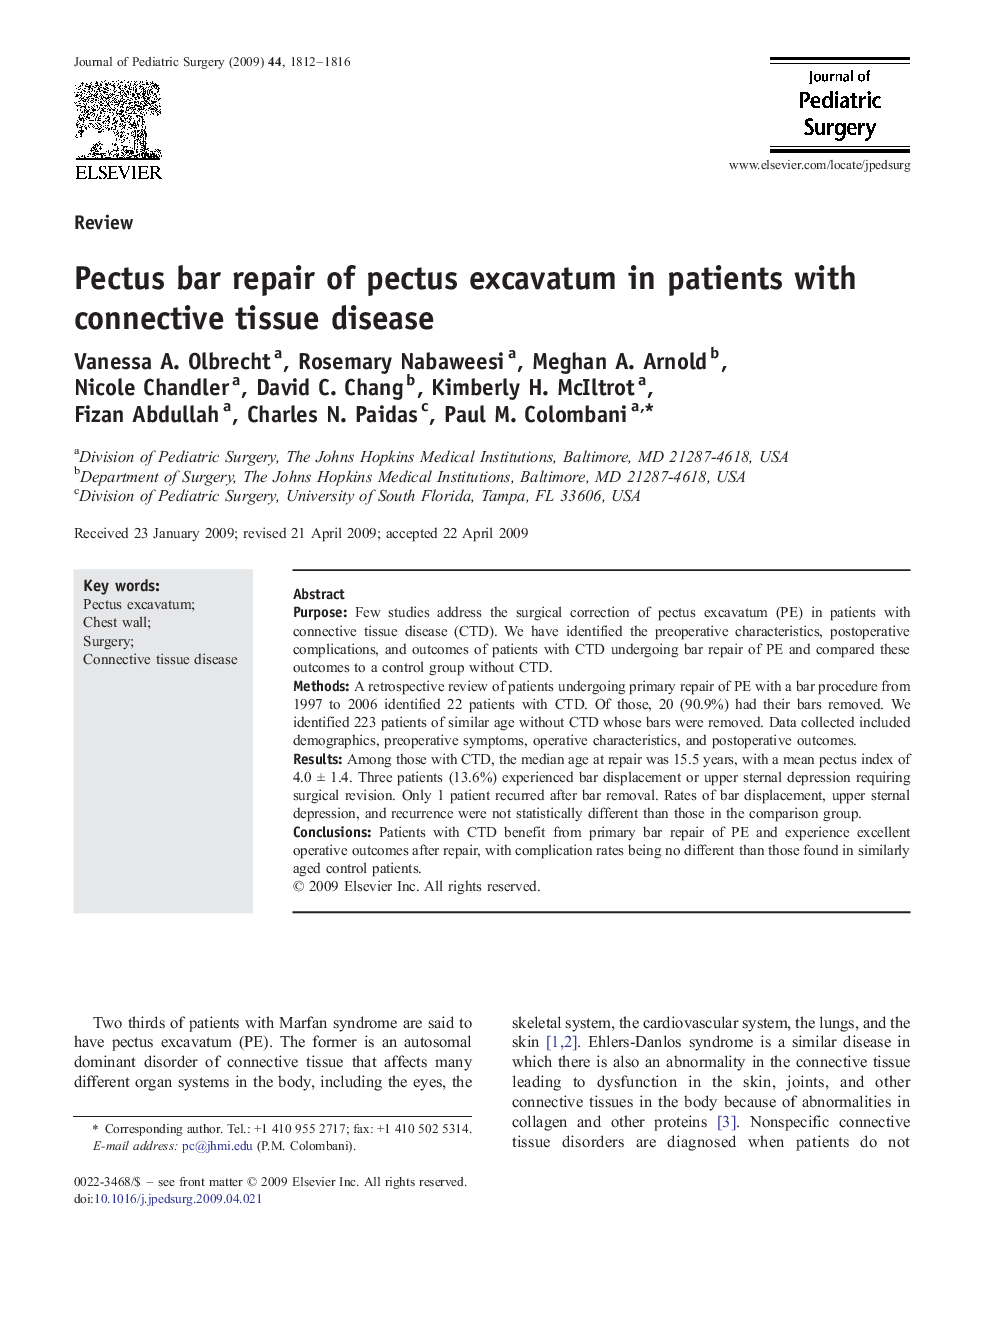 Pectus bar repair of pectus excavatum in patients with connective tissue disease